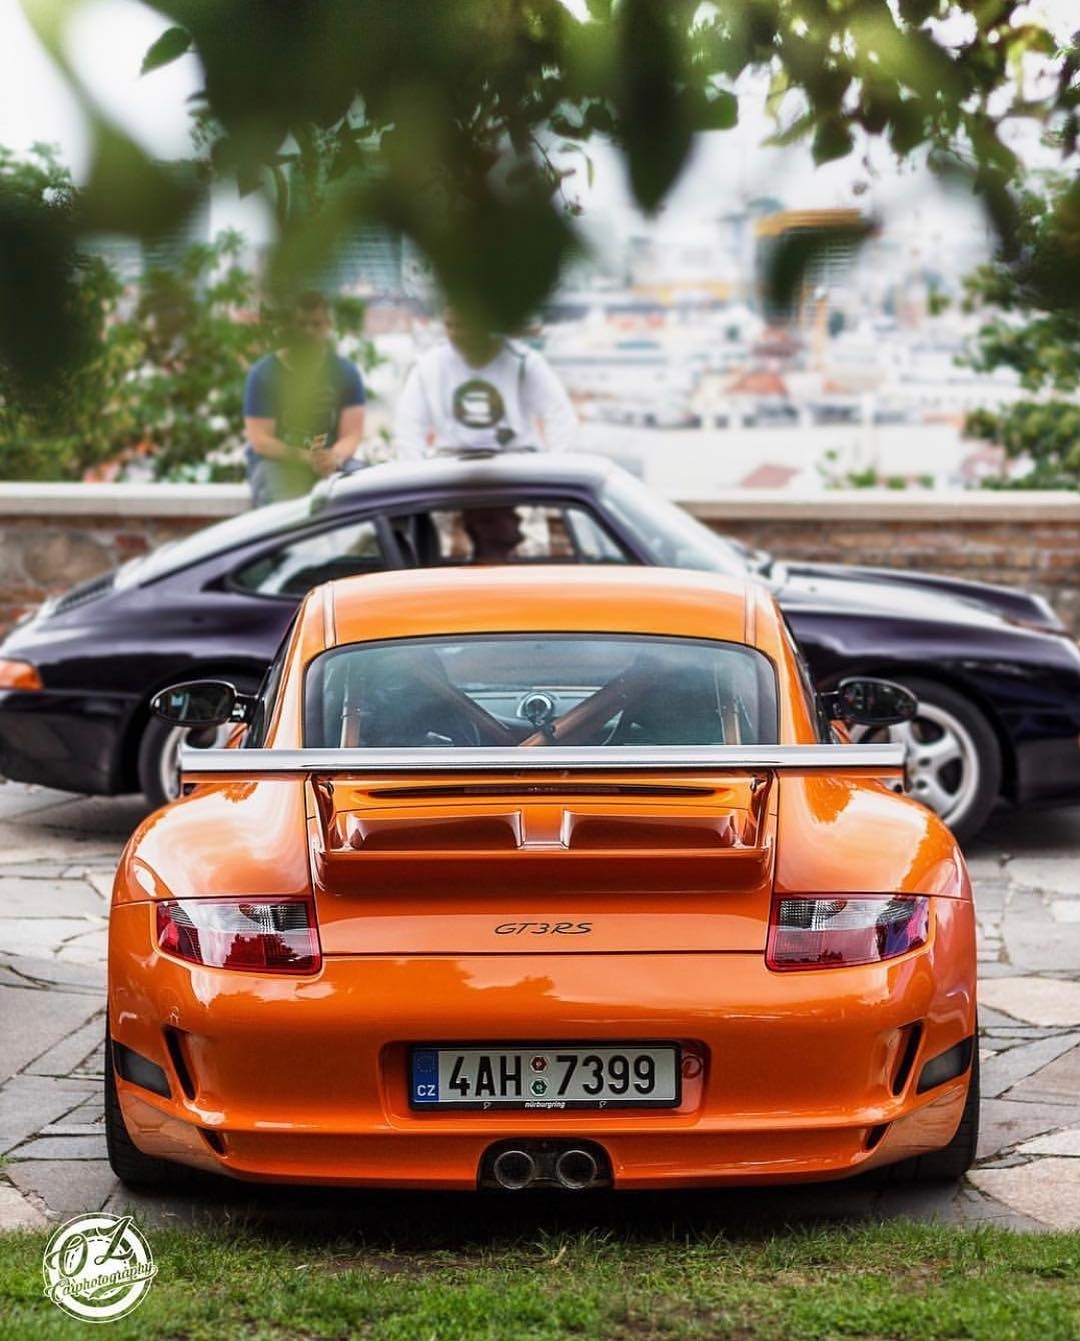 Top 10 Porsches on Instagram